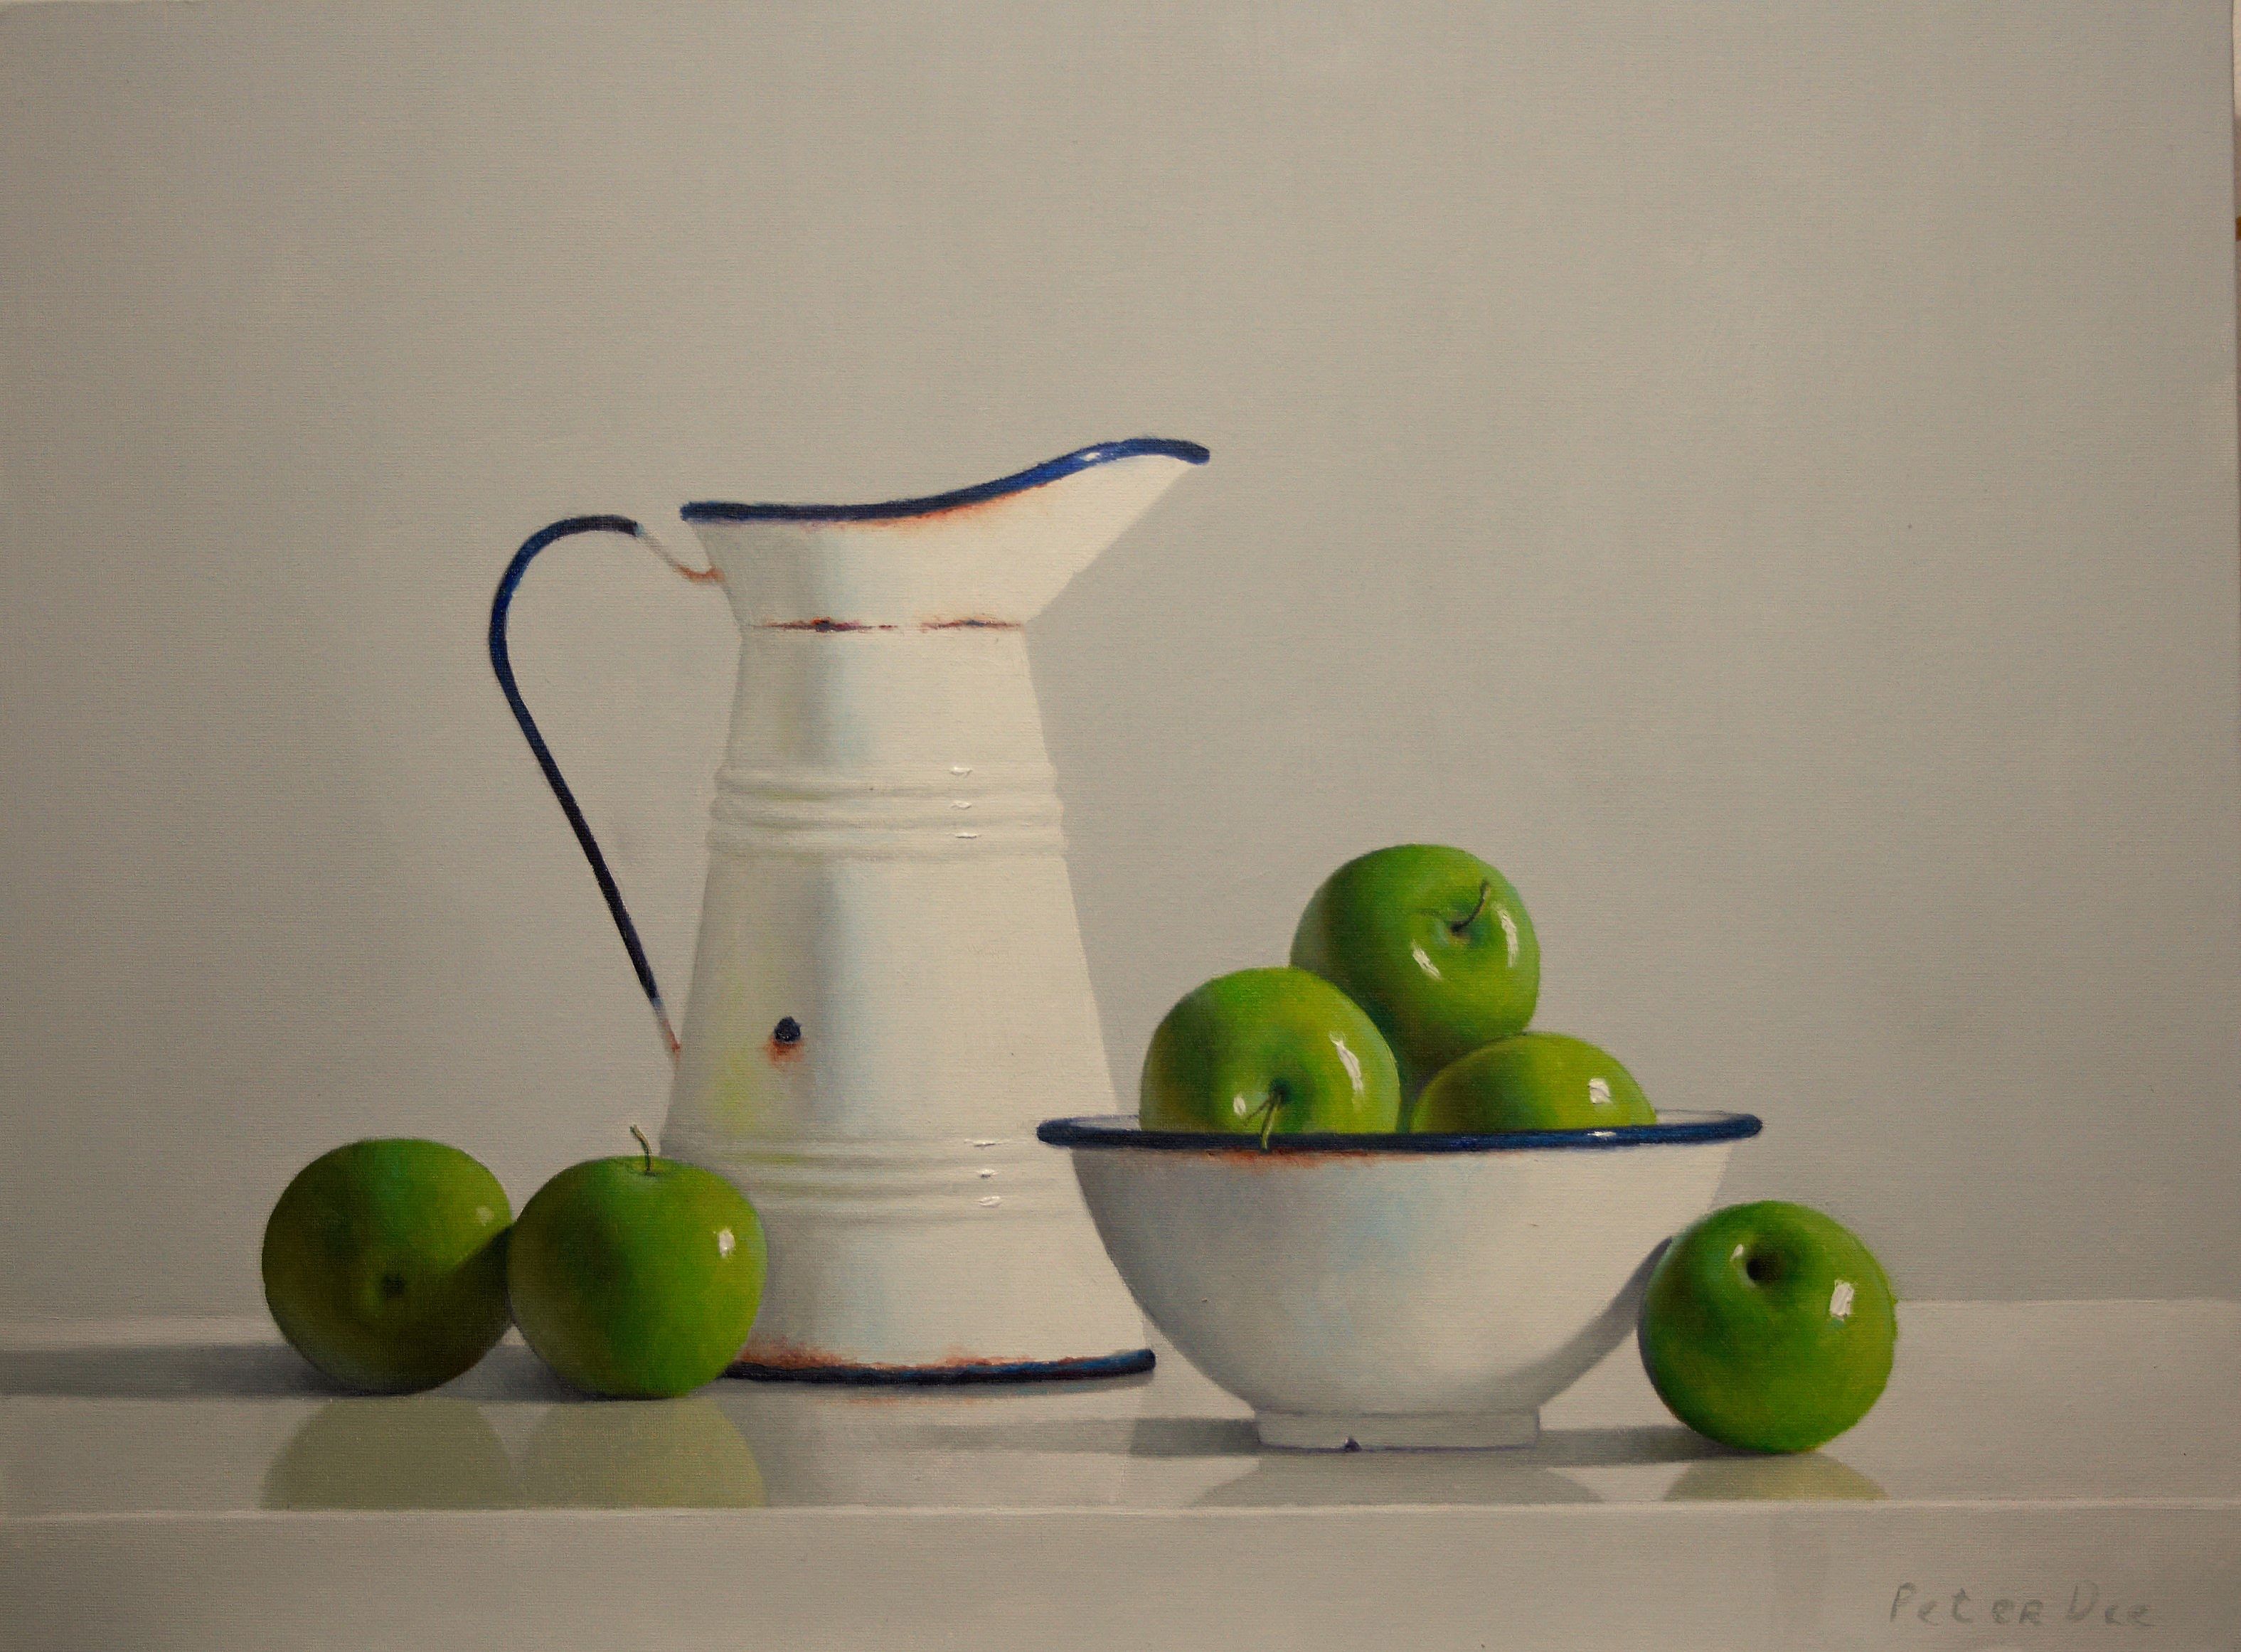 Vintage Enamelware with Green Apples by Peter Dee